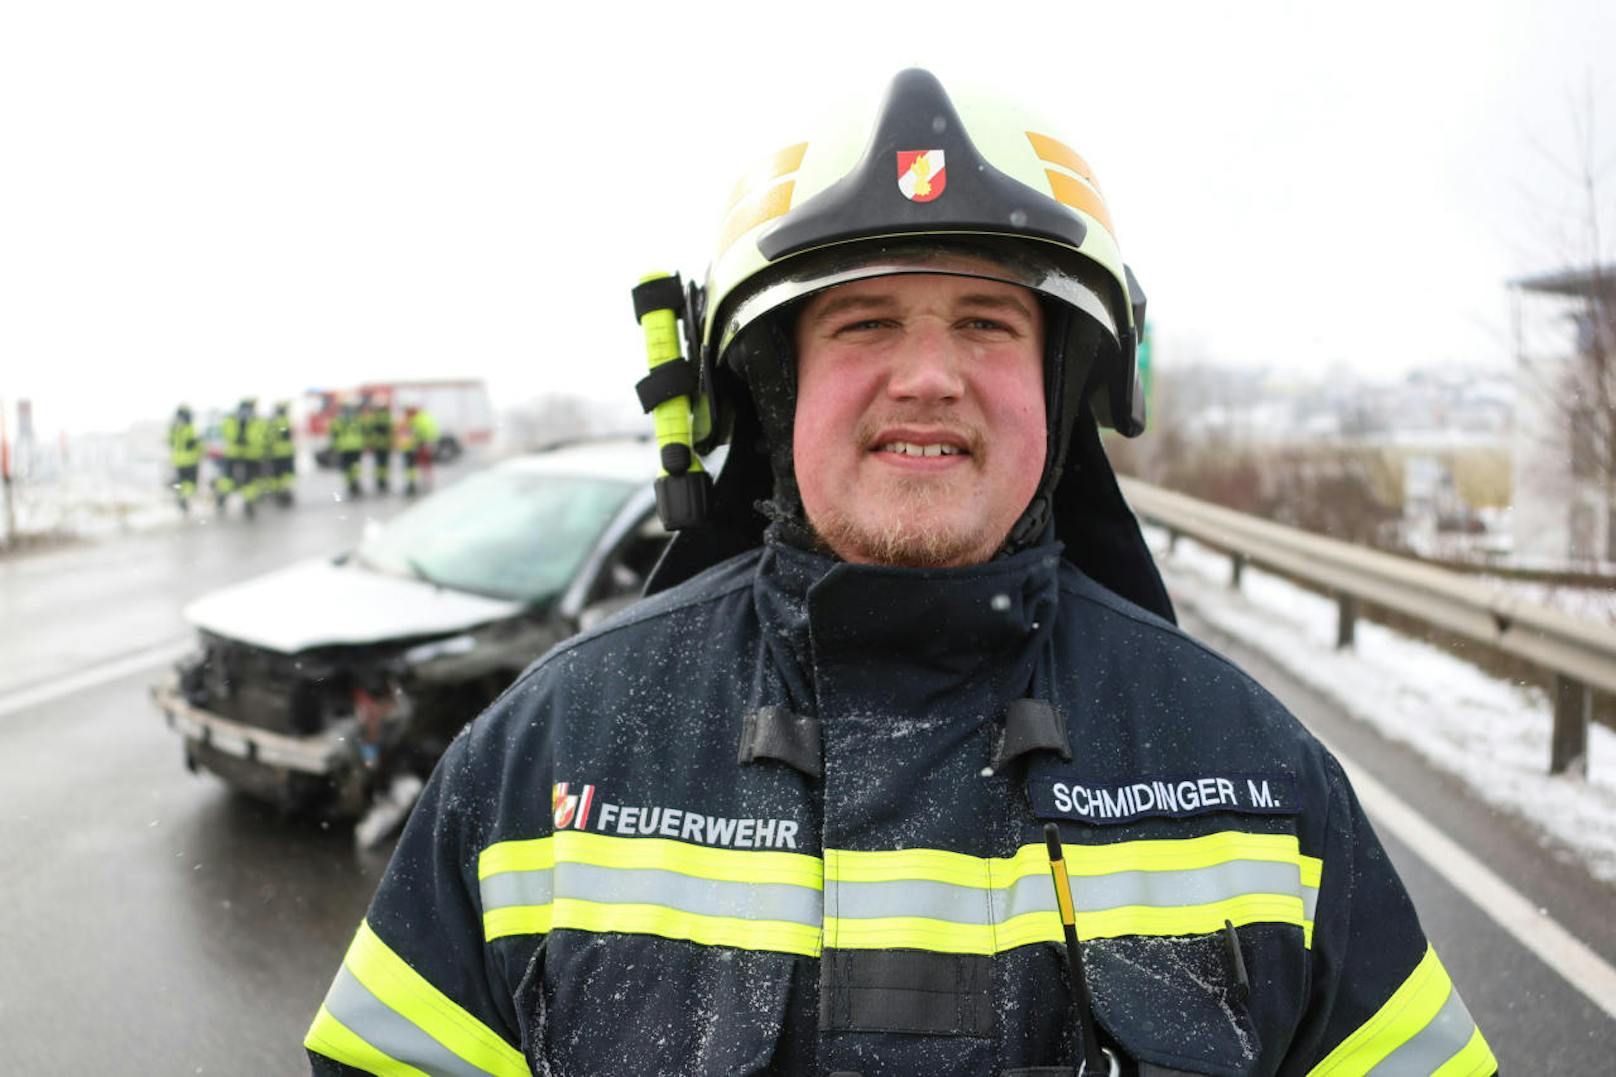 Wie wir eingetroffen sind, waren bereits die Rettungskräfte vor Ort", schildert Feuerwehr-Einsatzleiter Matthias Schmidinger. "Wir haben die Absicherungsarbeiten für die tätigen Einsatzkräfte und den Brandschutz übernommen."